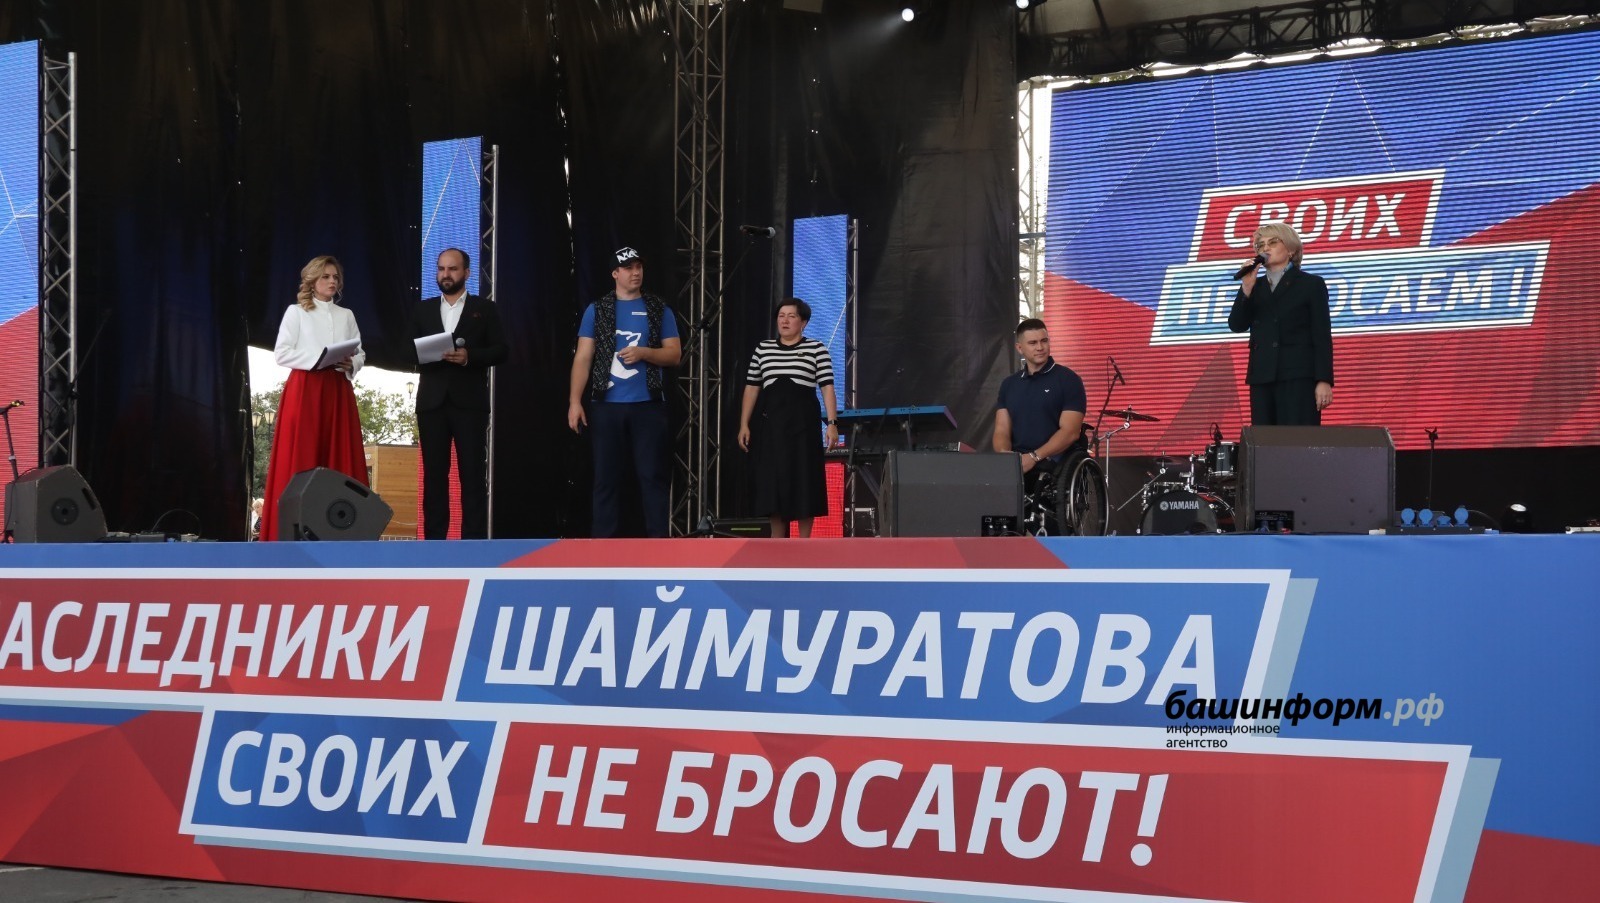 Более 20 тысяч человек собрались в Уфе на митинге-концерте «Потомки Шаймуратова своих не бросают!»